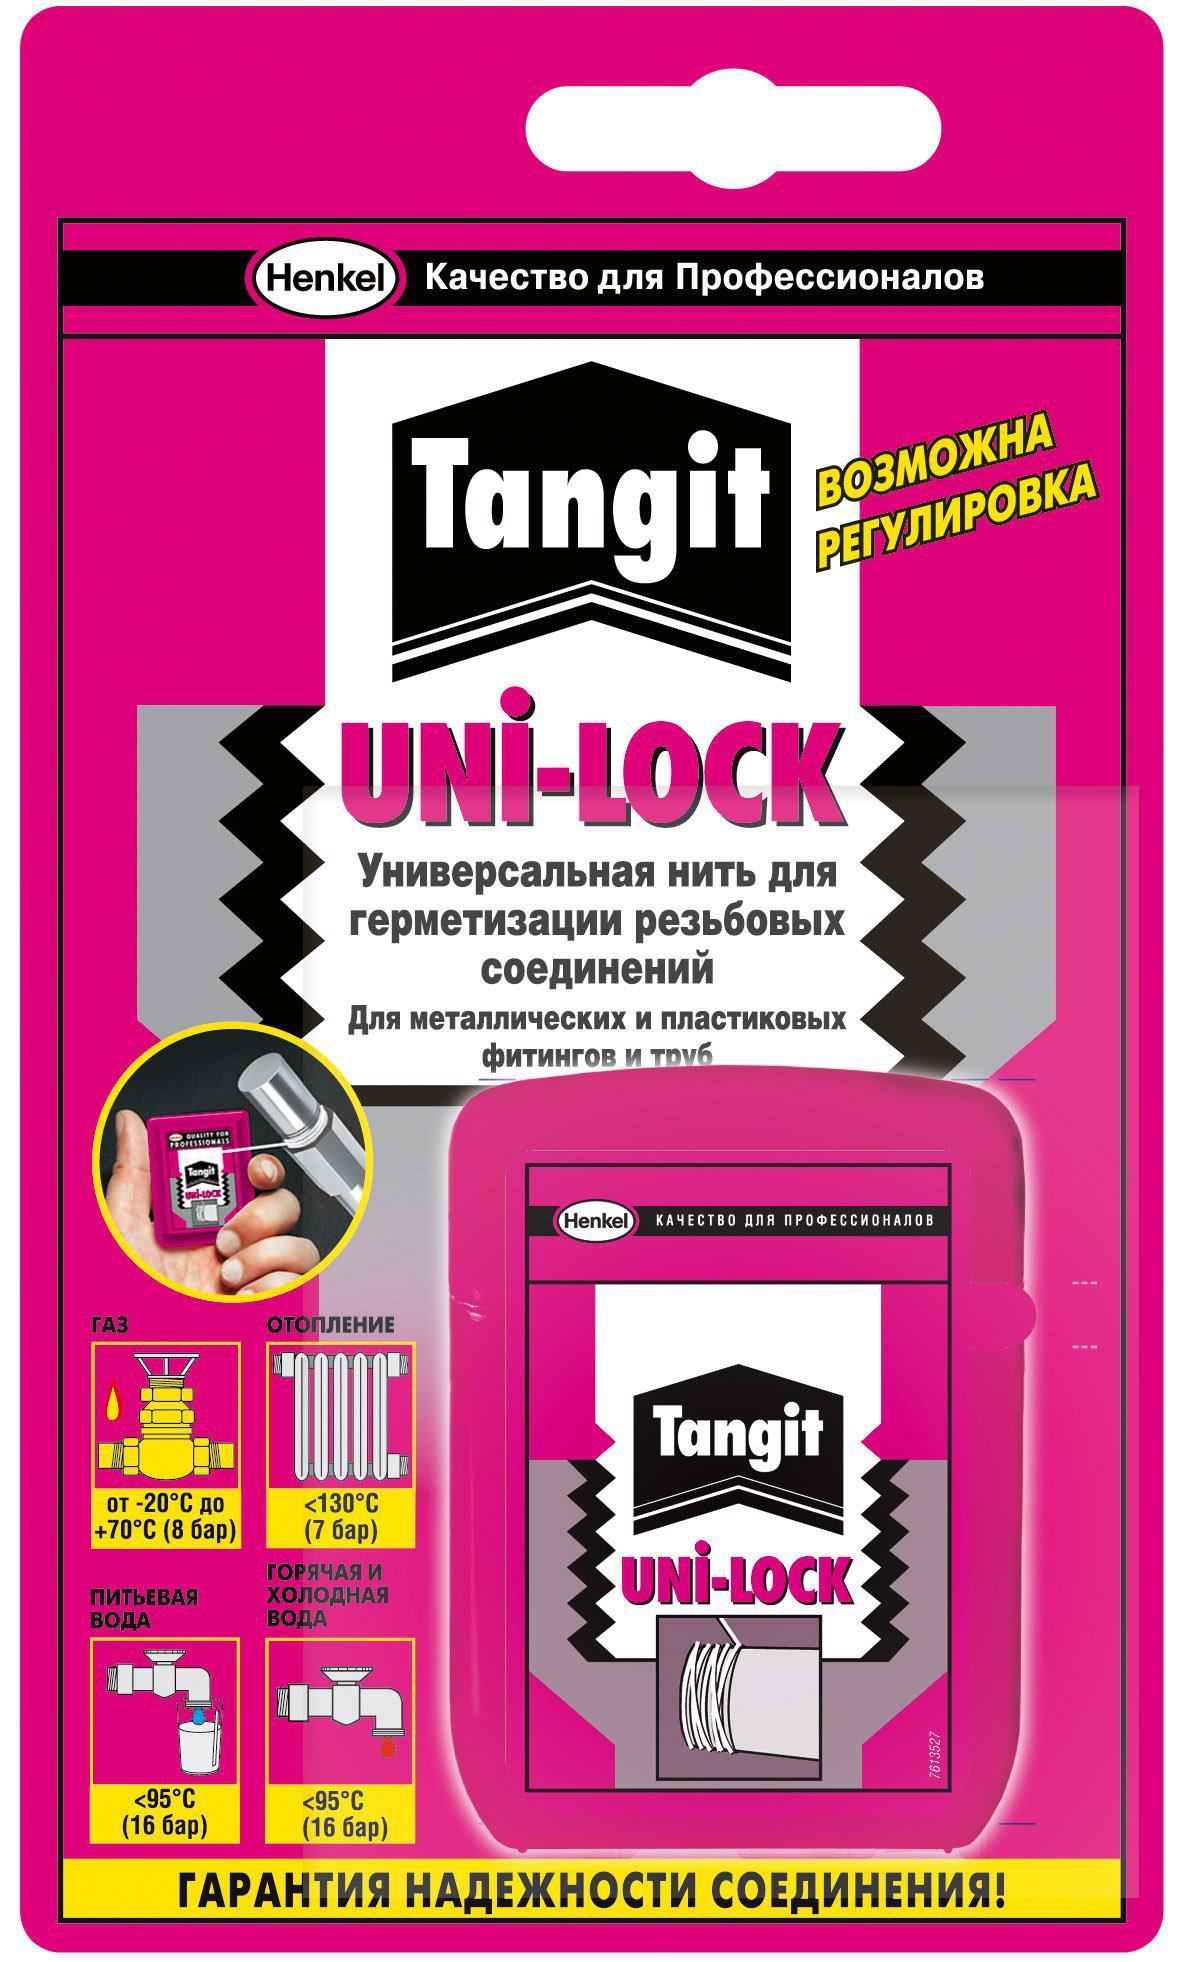 

Нить Henkel Тангит uni-lock, Тангит uni-lock